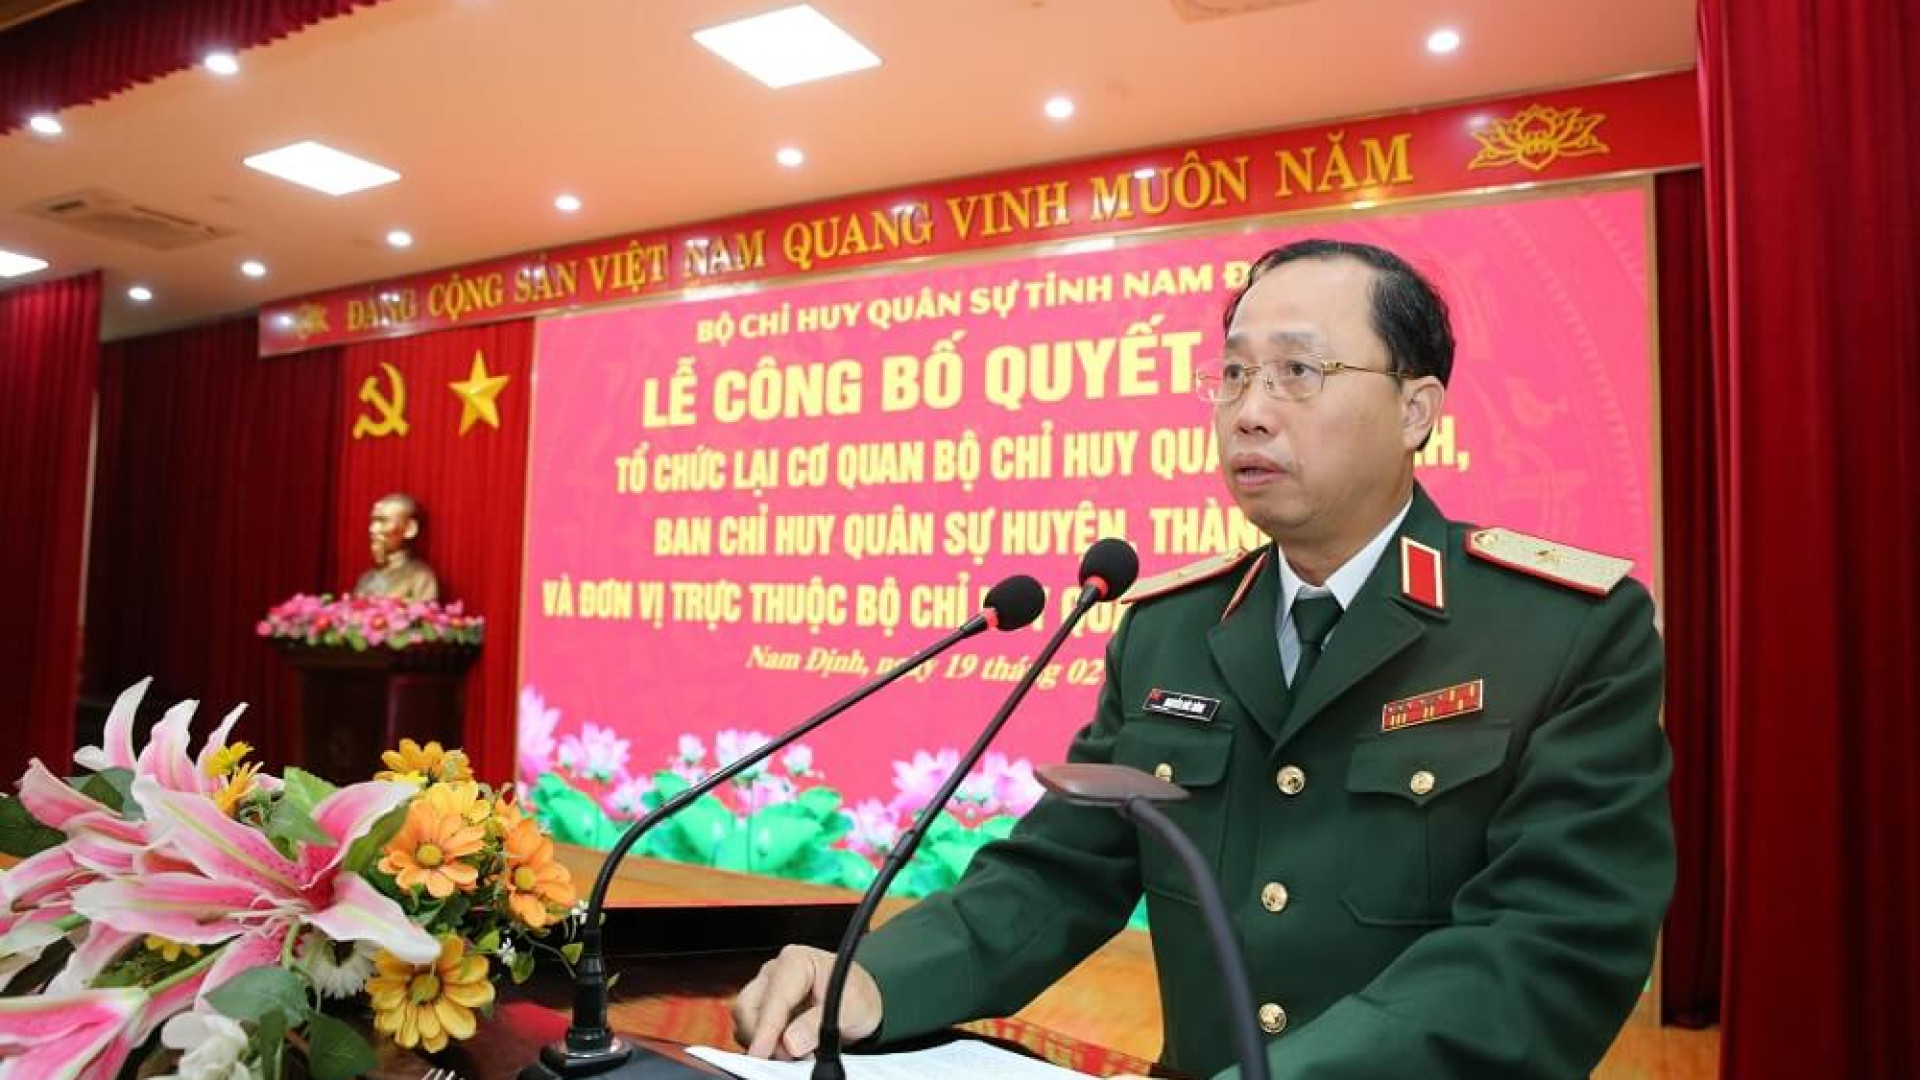 Bộ CHQS tỉnh Nam Định: Công bố Quyết định tổ chức lại cơ quan Bộ CHQS tỉnh và các đơn vị trực thuộc